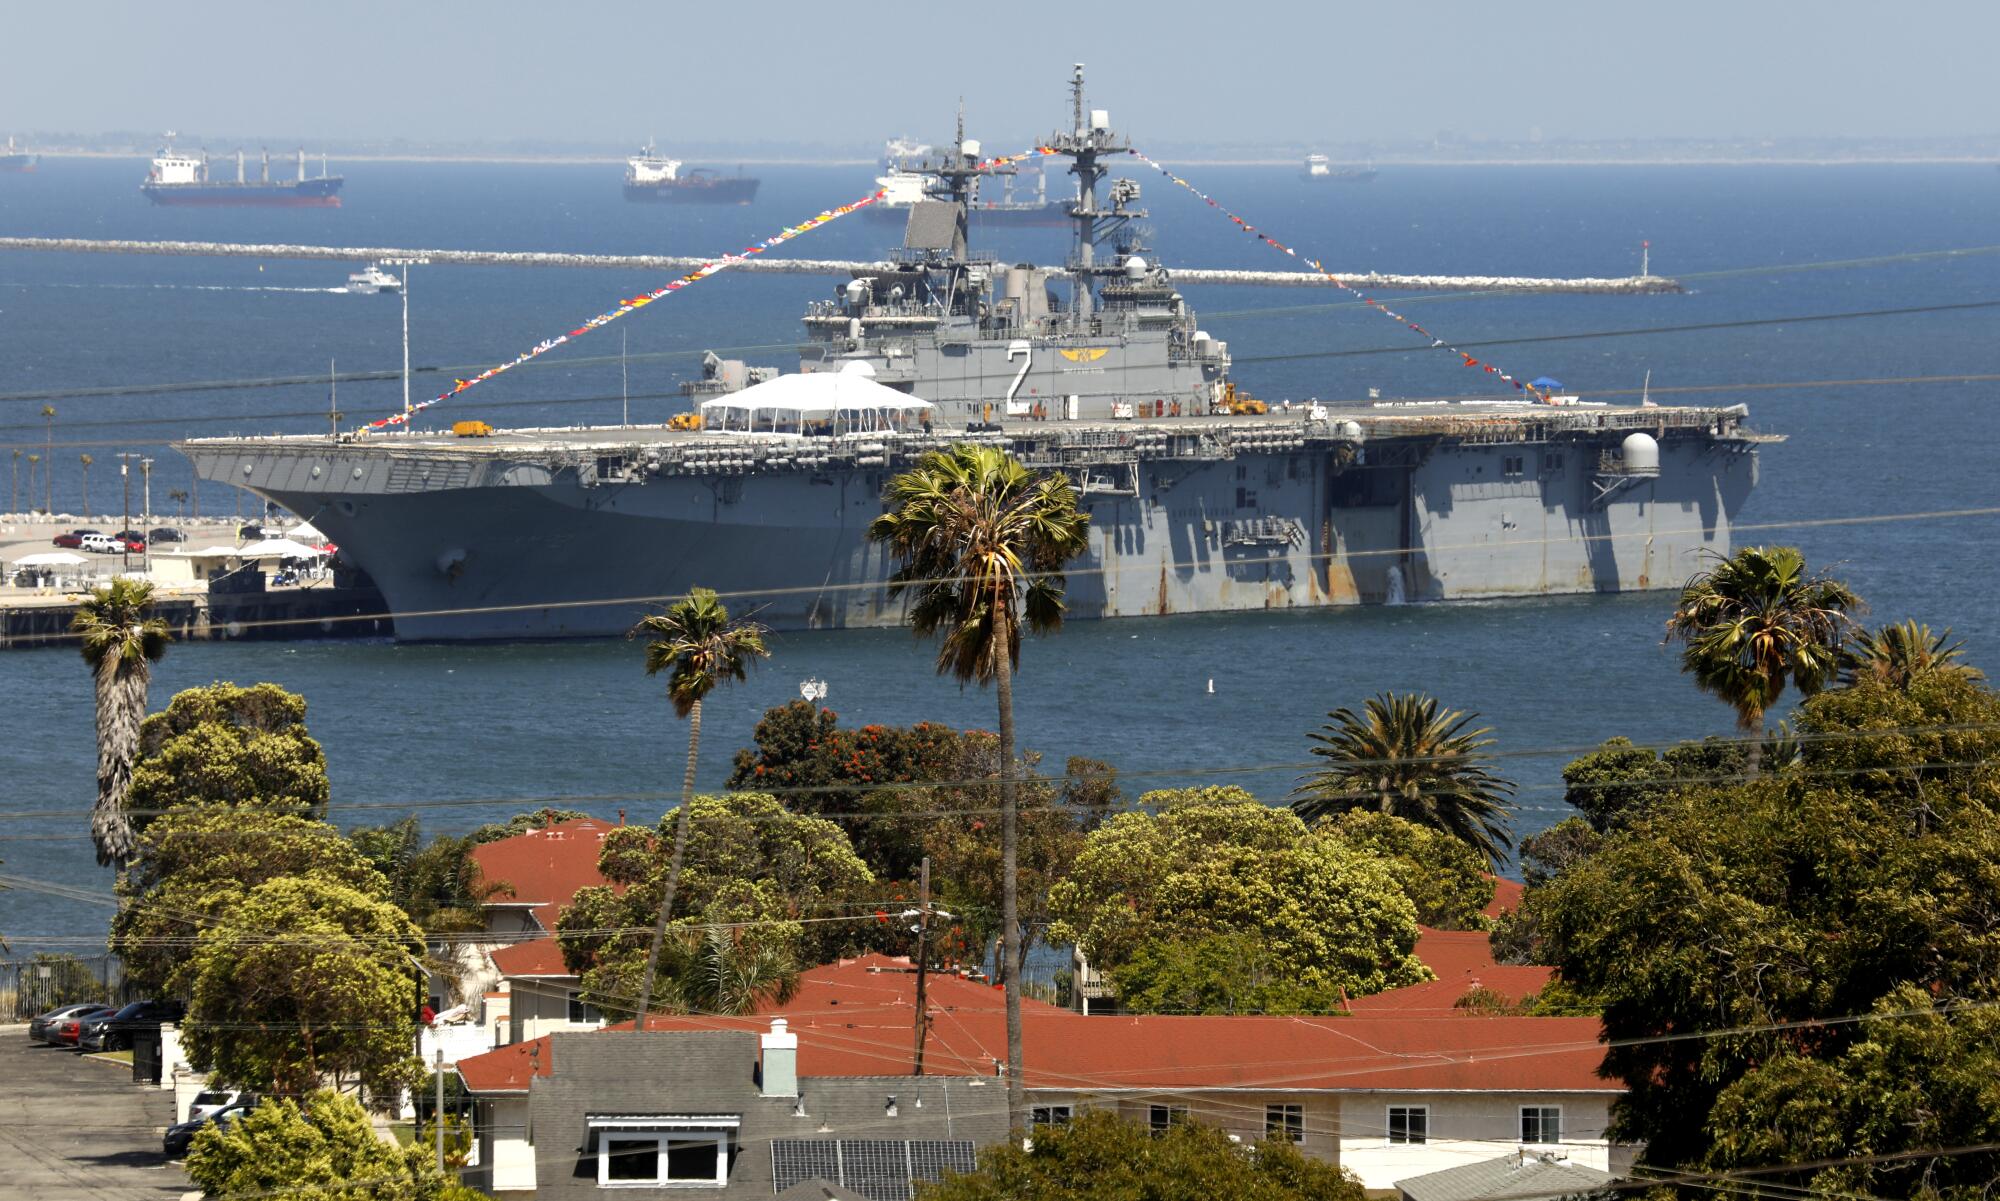 Los Angeles Fleet Week celebrations return to the Port of Los Angeles through Memorial Day Weekend. 